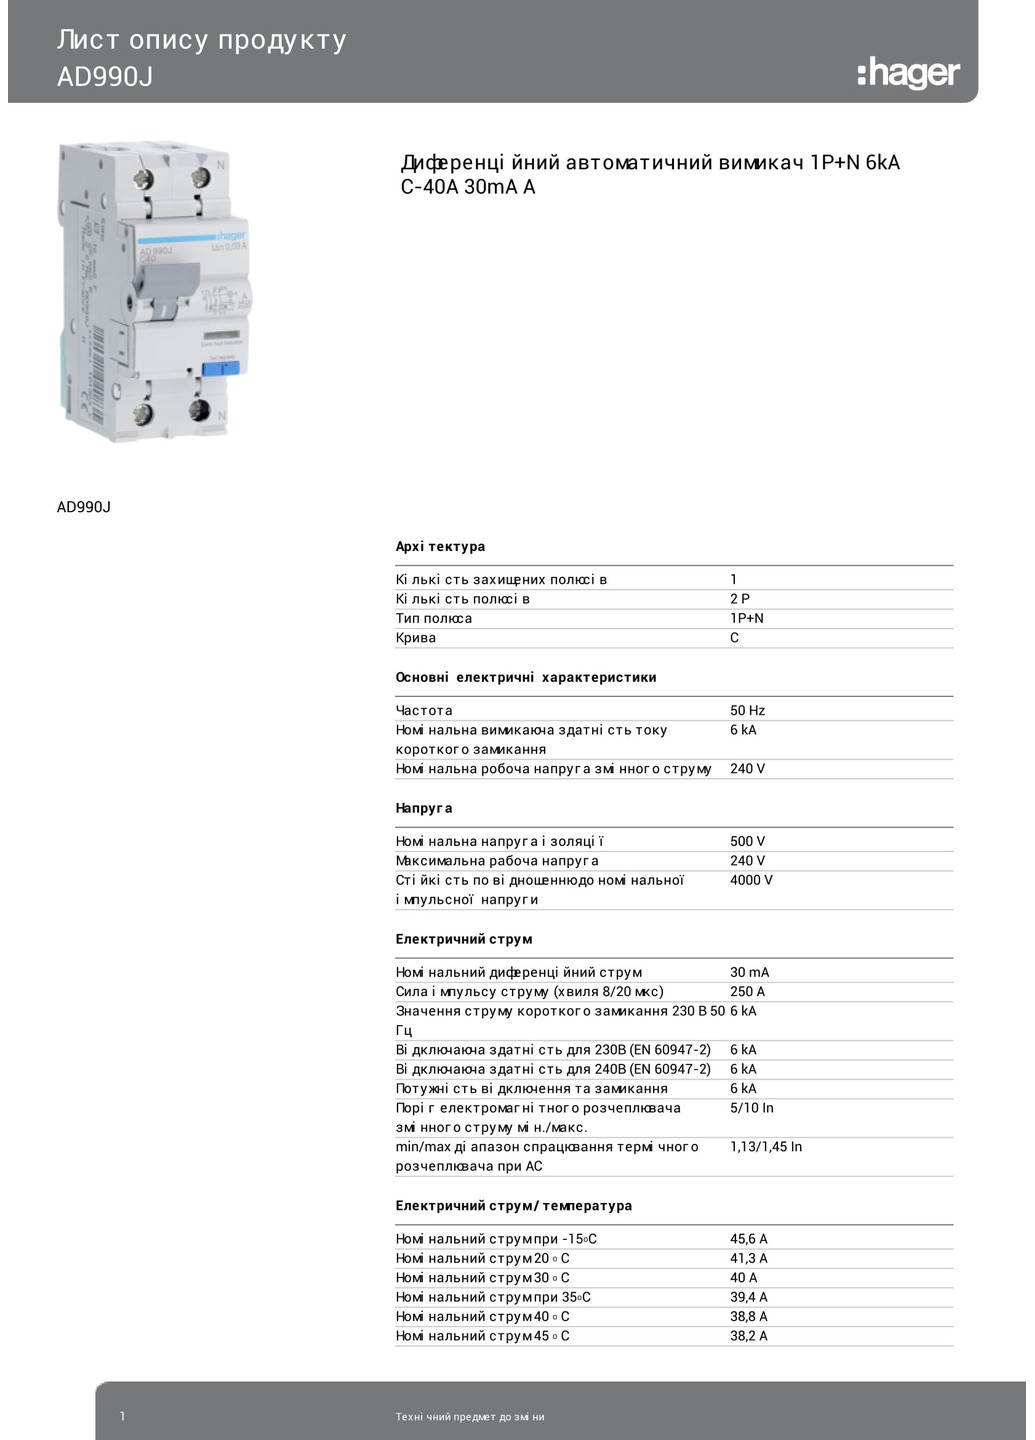 Диференціальний автоматичний вимикач AD990J 1P+N 6kA C40A 30mA тип A дифавтомат (3314) Hager (265535450)